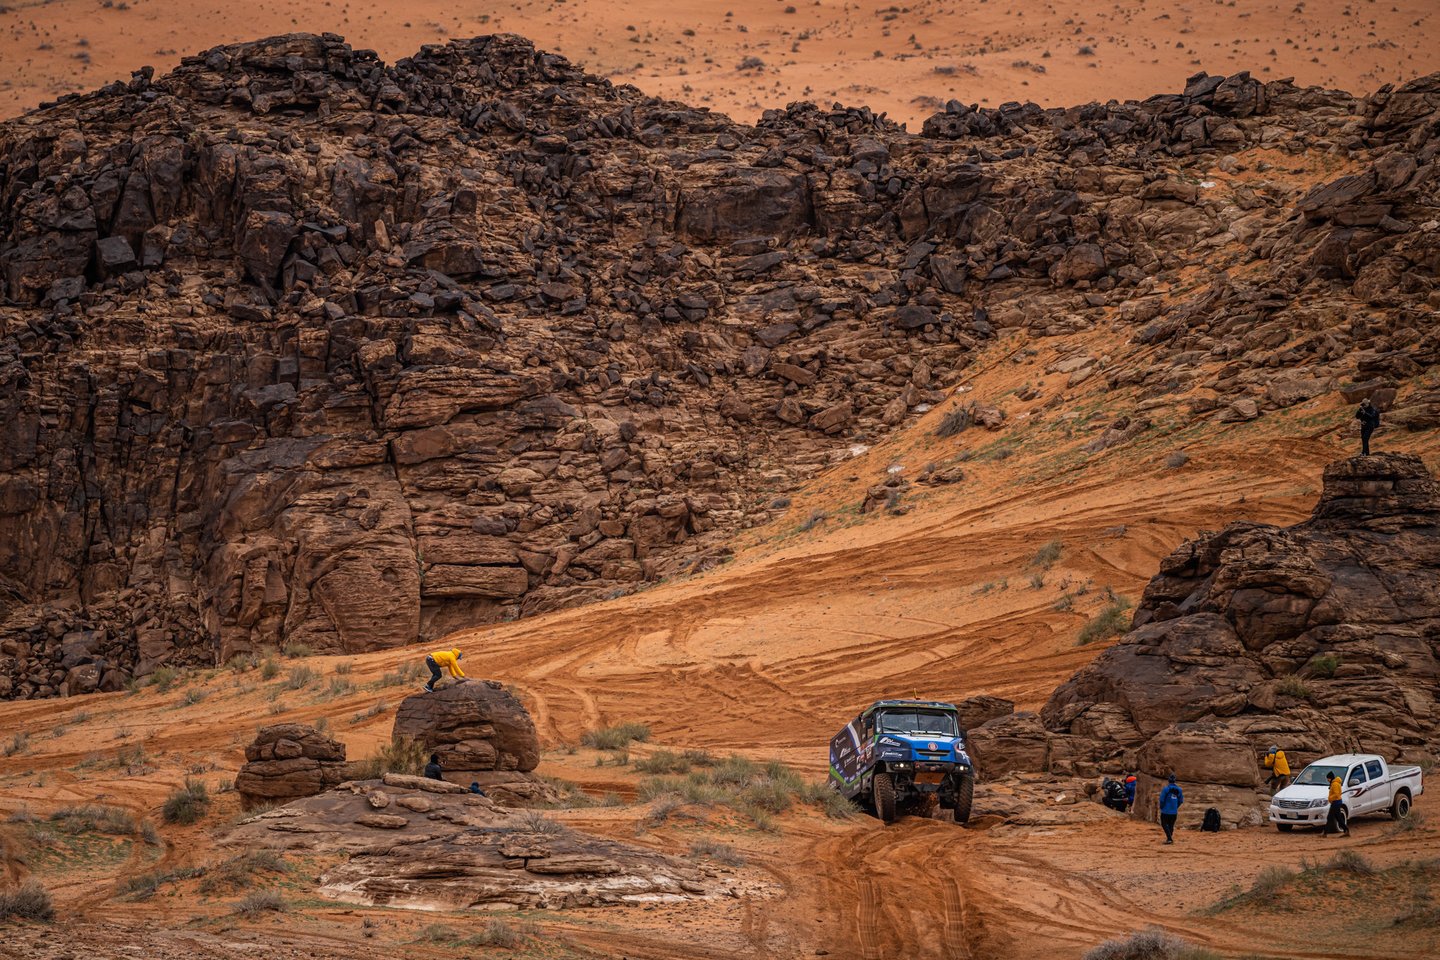 Penktoji Dakaro ralio diena sunkvežimių įskaitoje lenktyniaujančiai „Constra Racing“ komandai buvo itin permaininga.<br>„M.Macik team“ nuotr.